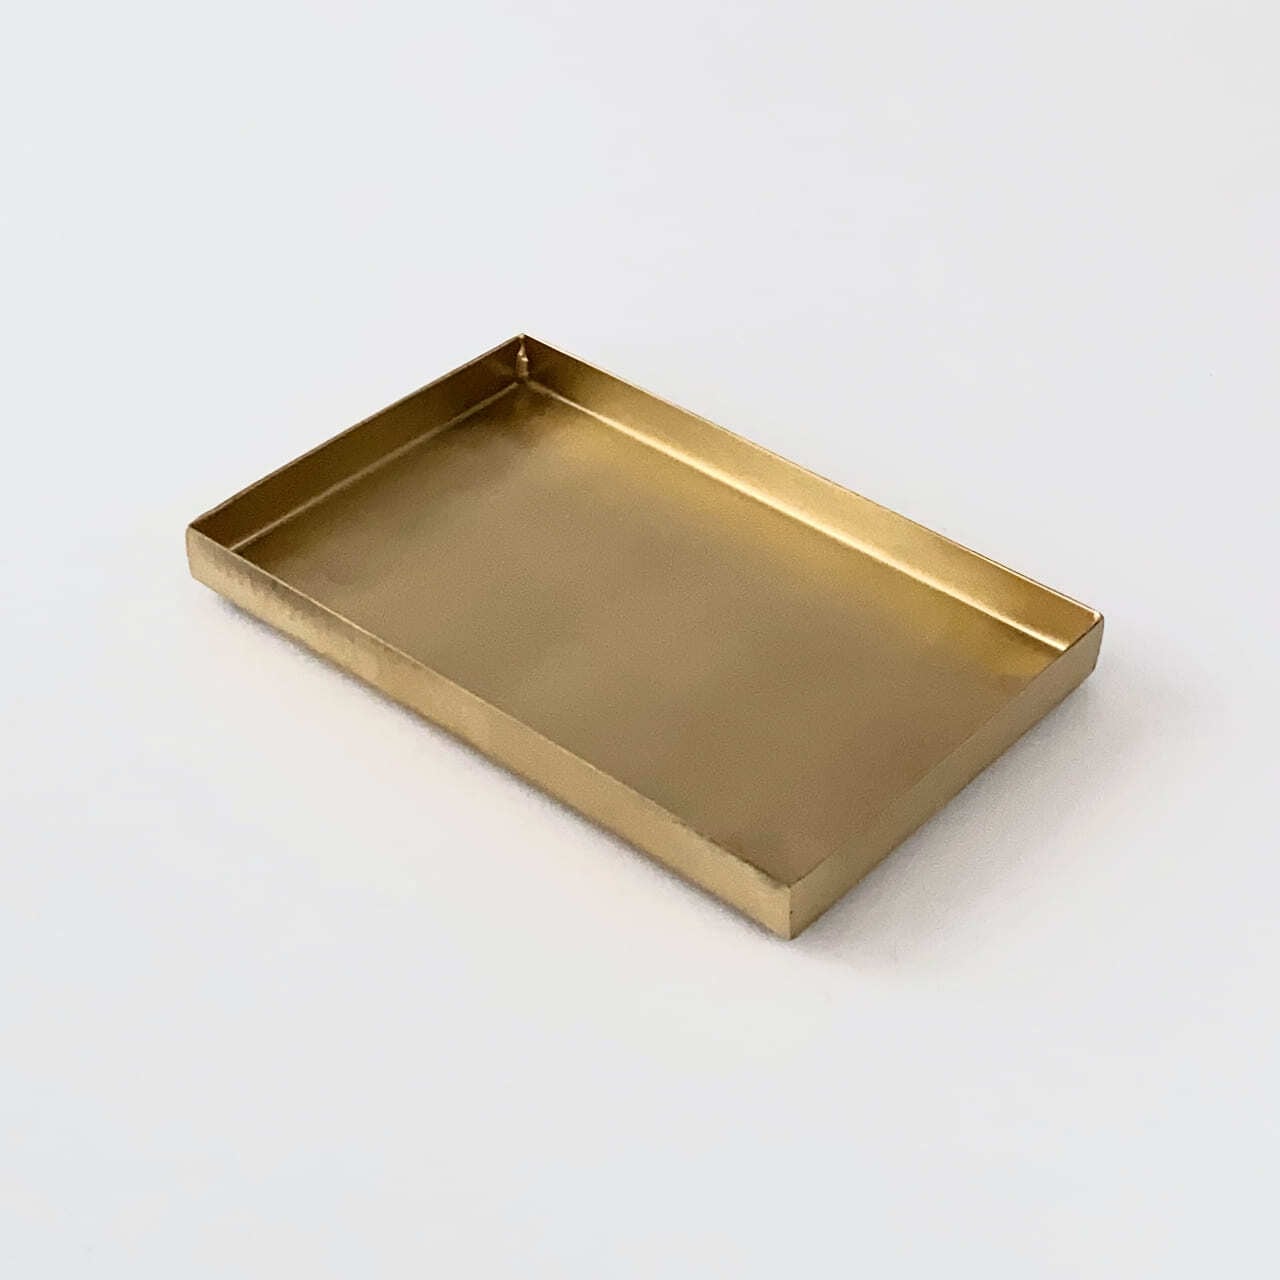 真鍮のトレイ 長方形 ブラストレイレクタングル / Brass Rectangle Tray